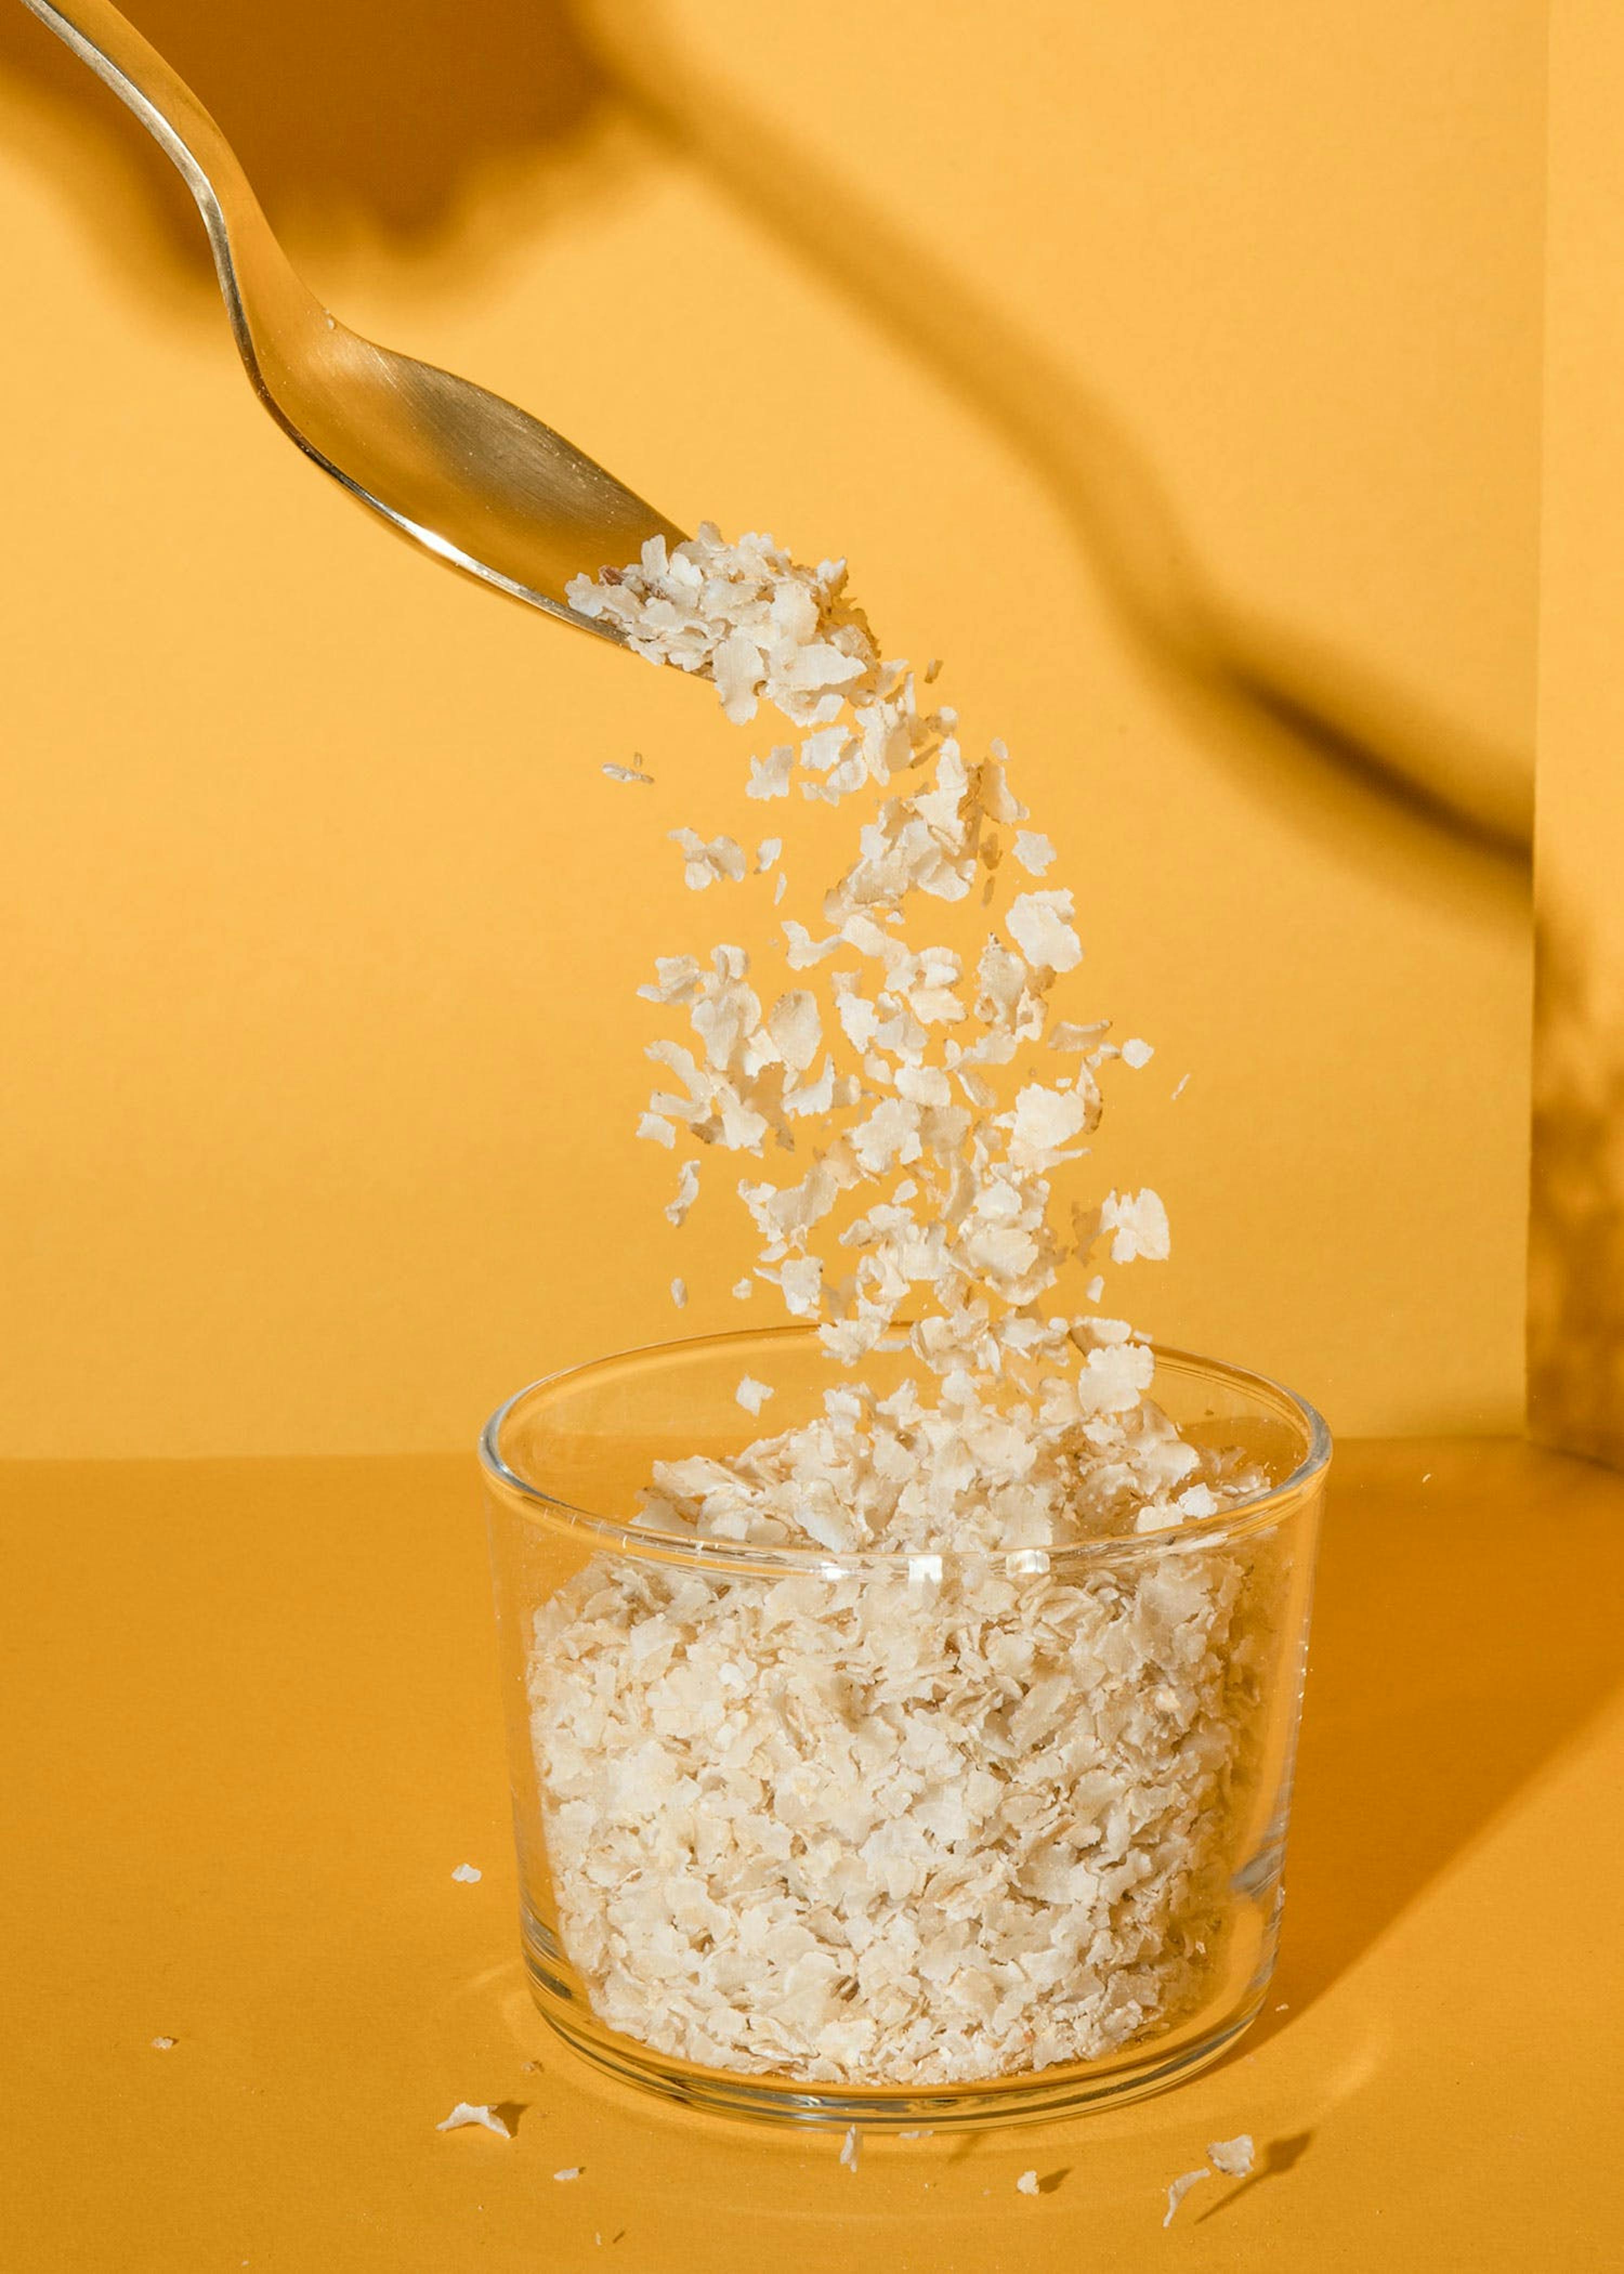 Fiocchi di riso bio 250g Pensa bio in vendita online su Bioazeta